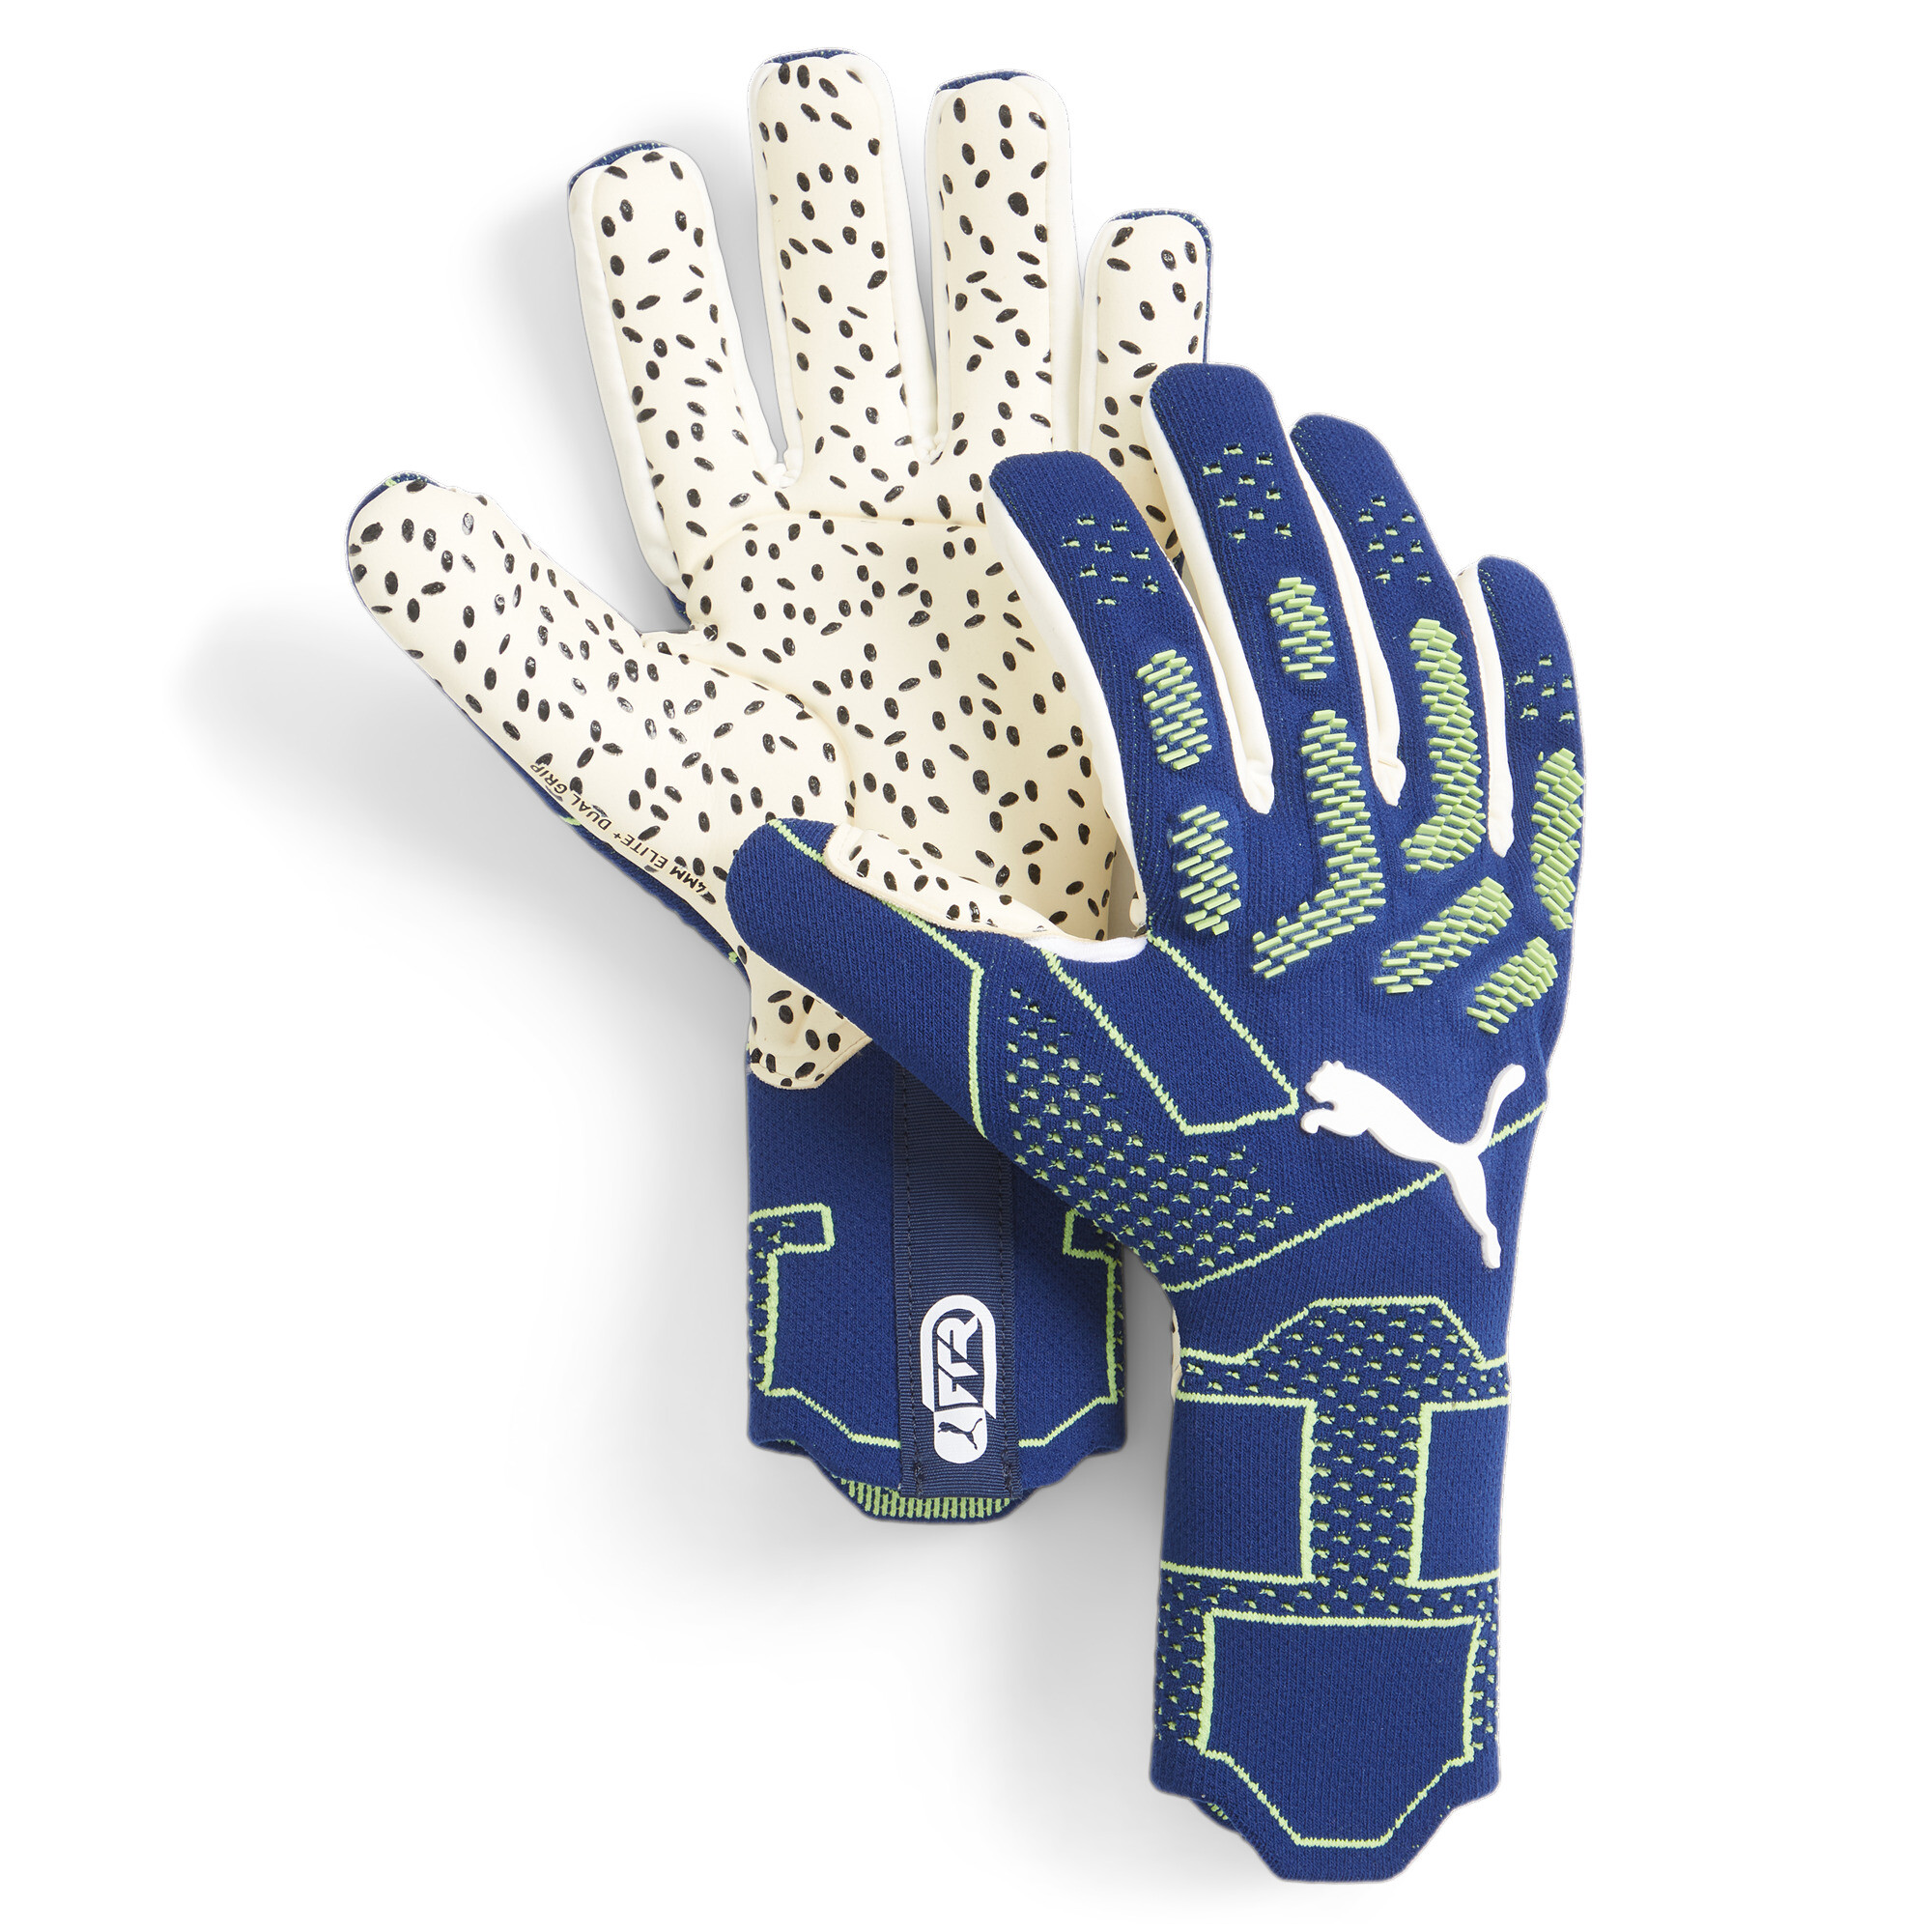 Men's PUMA FUTURE Ultimate Negative Cut Football Goalkeeper Gloves In Blue, Size UK 7